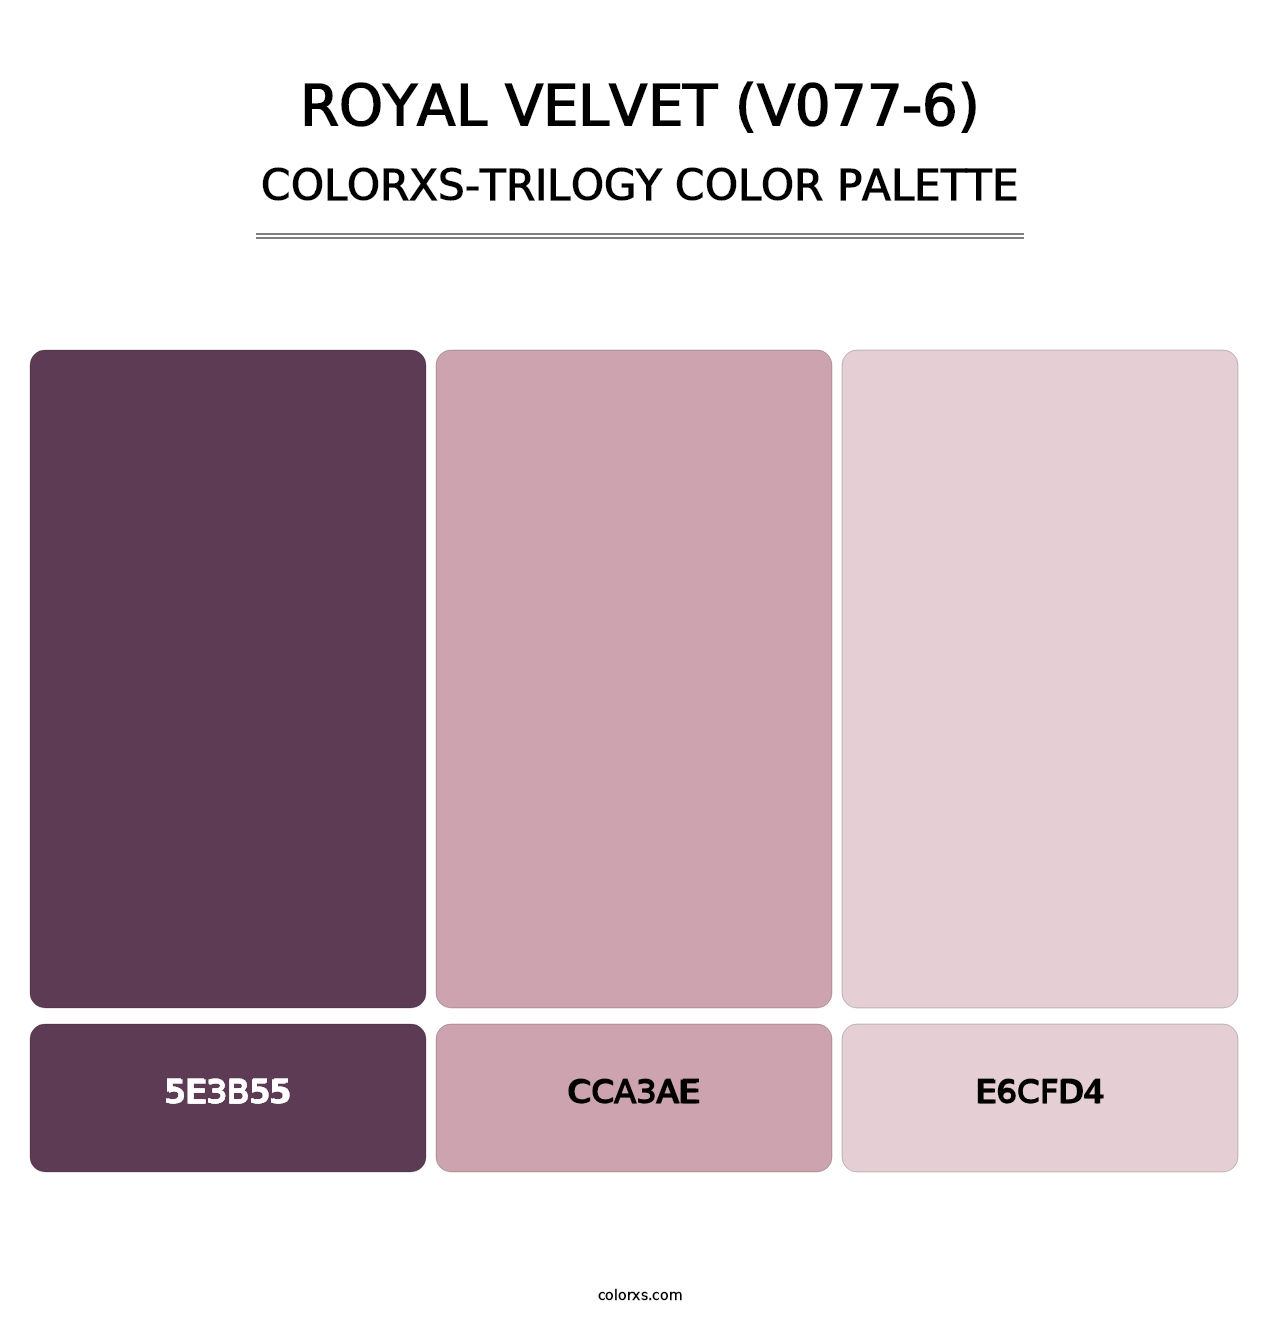 Royal Velvet (V077-6) - Colorxs Trilogy Palette